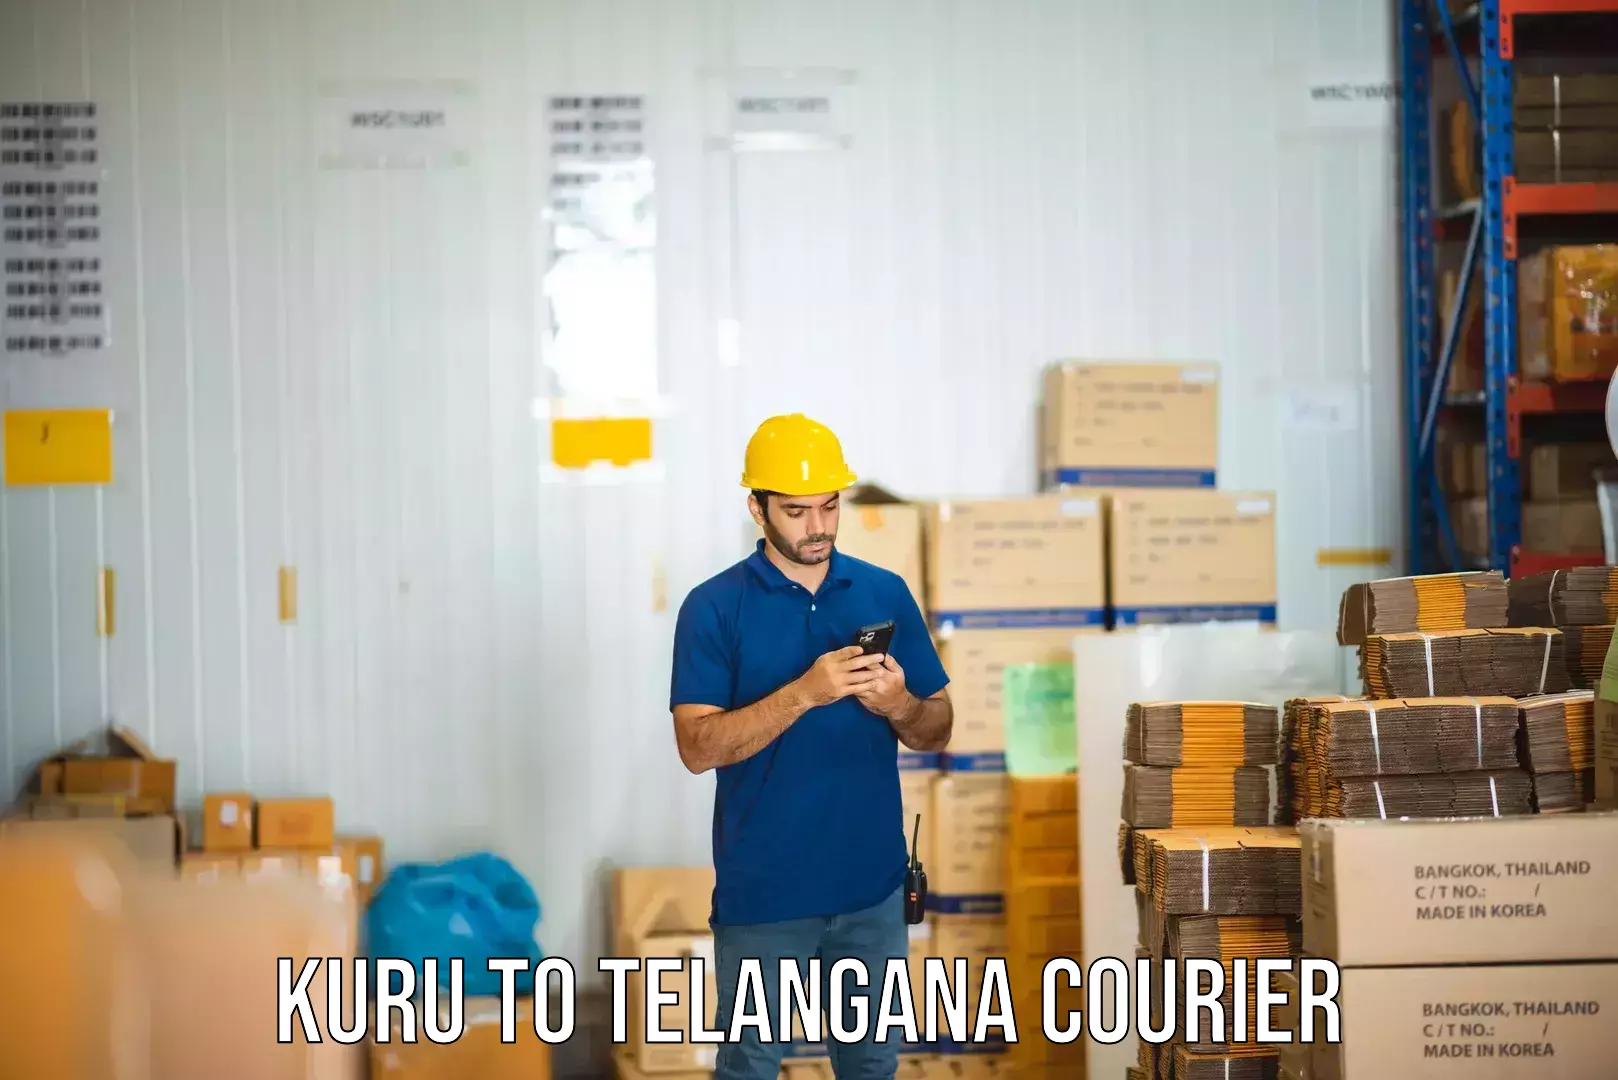 Advanced shipping technology Kuru to Pathipaka